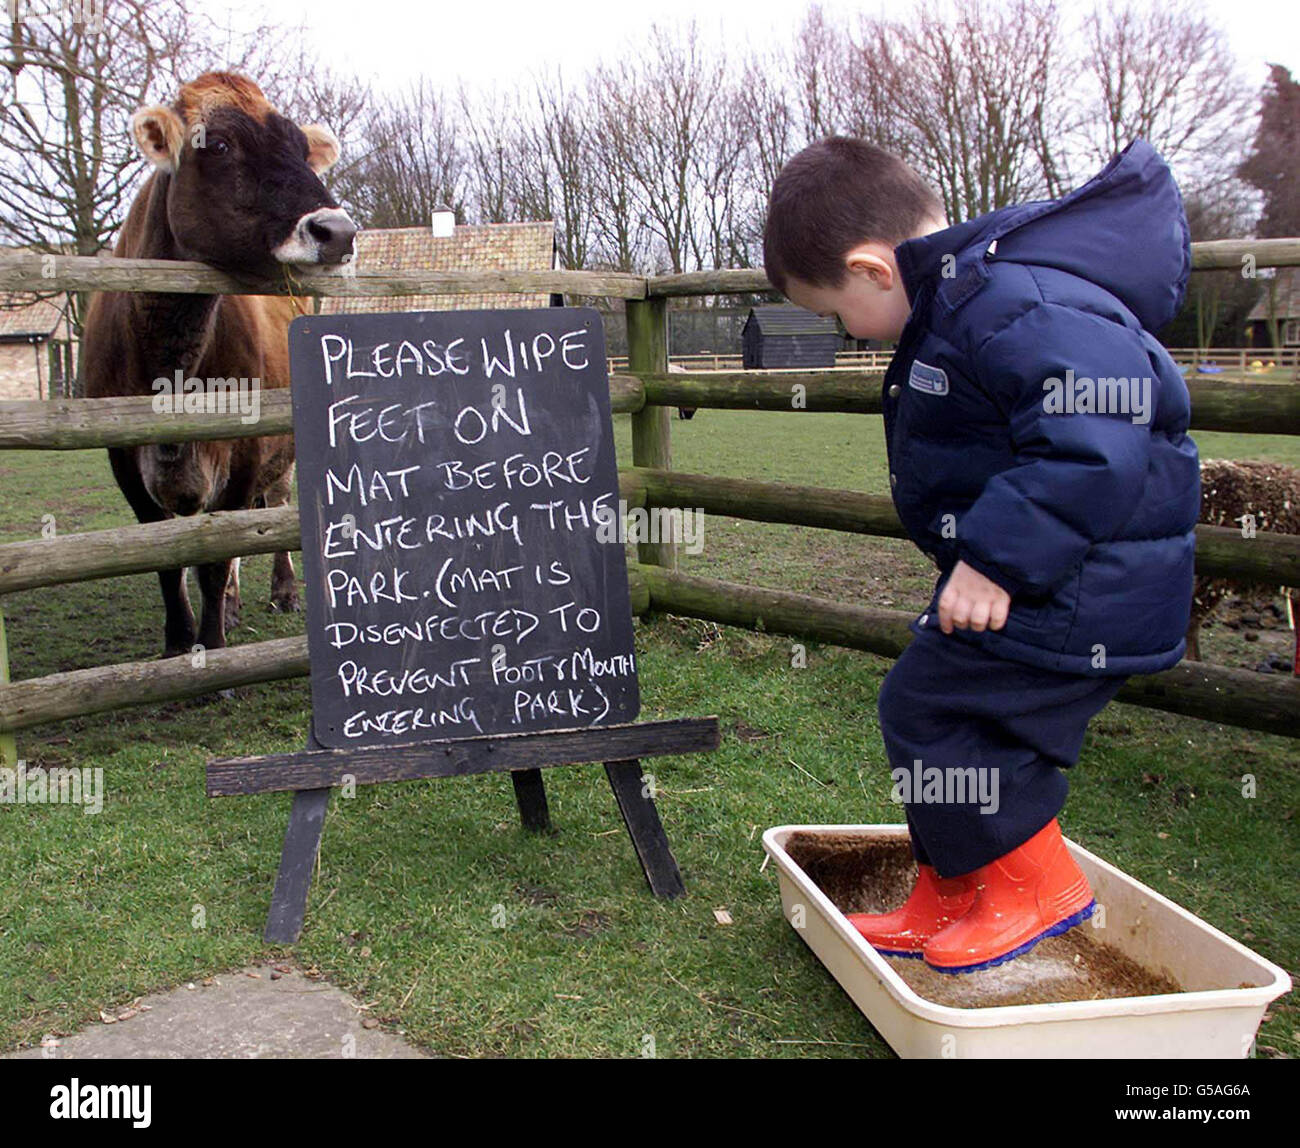 Jamie Bruce, de cuatro años de edad, desinfecta sus botas antes de asistir  a la escuela infantil de Treetop, donde los niños han tenido que  desinfectar sus zapatos debido al brote de